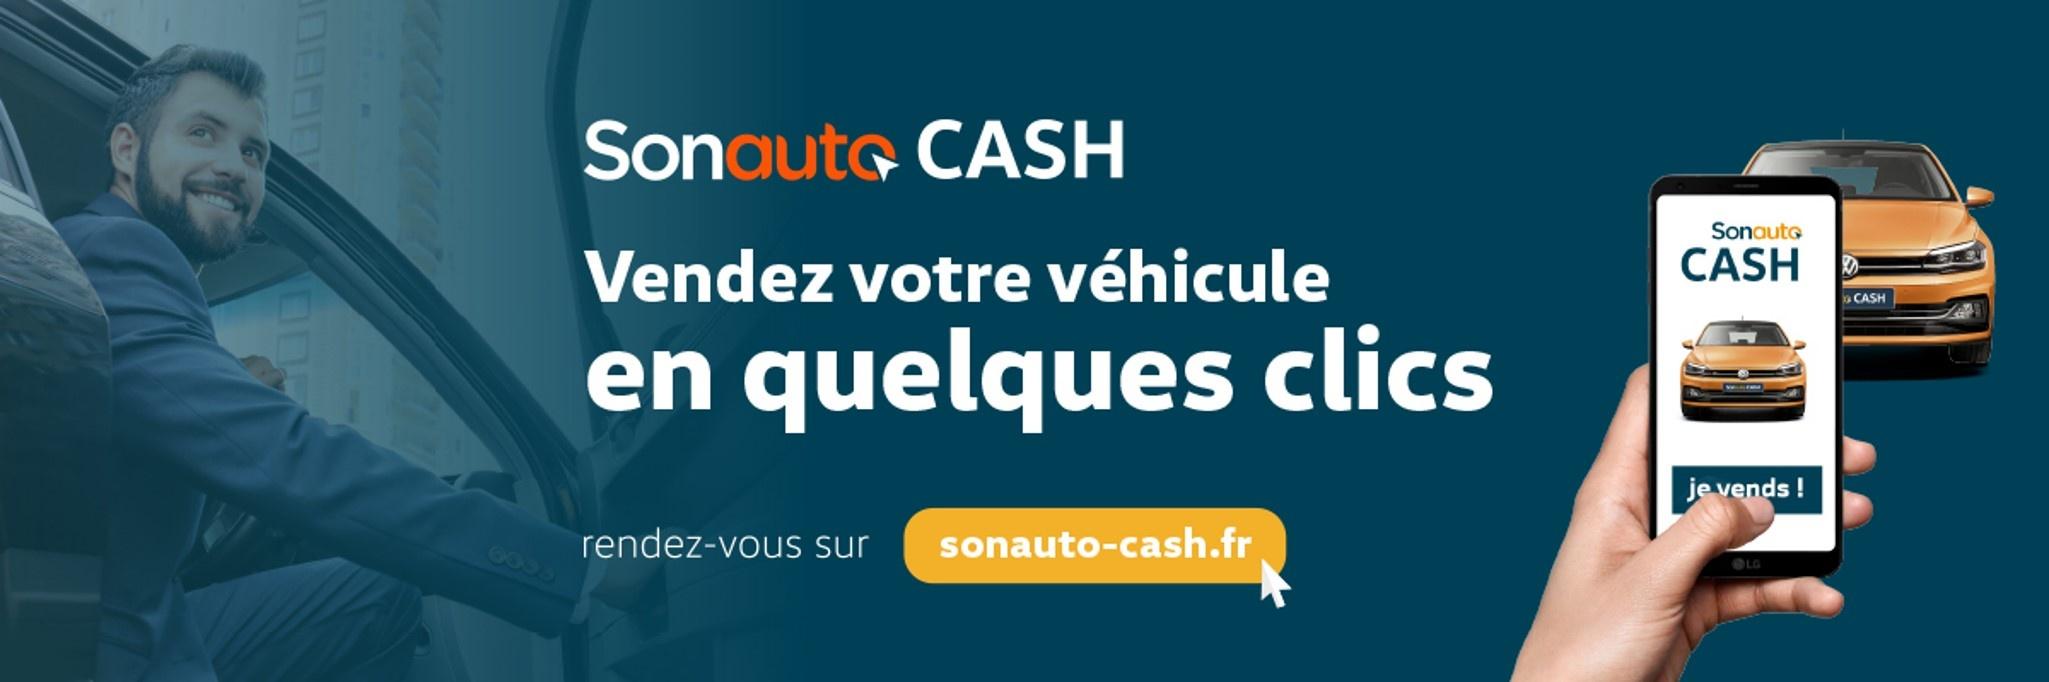 Cupra mougins - Vendez votre véhicule en quelques clics avec Sonauto Cash